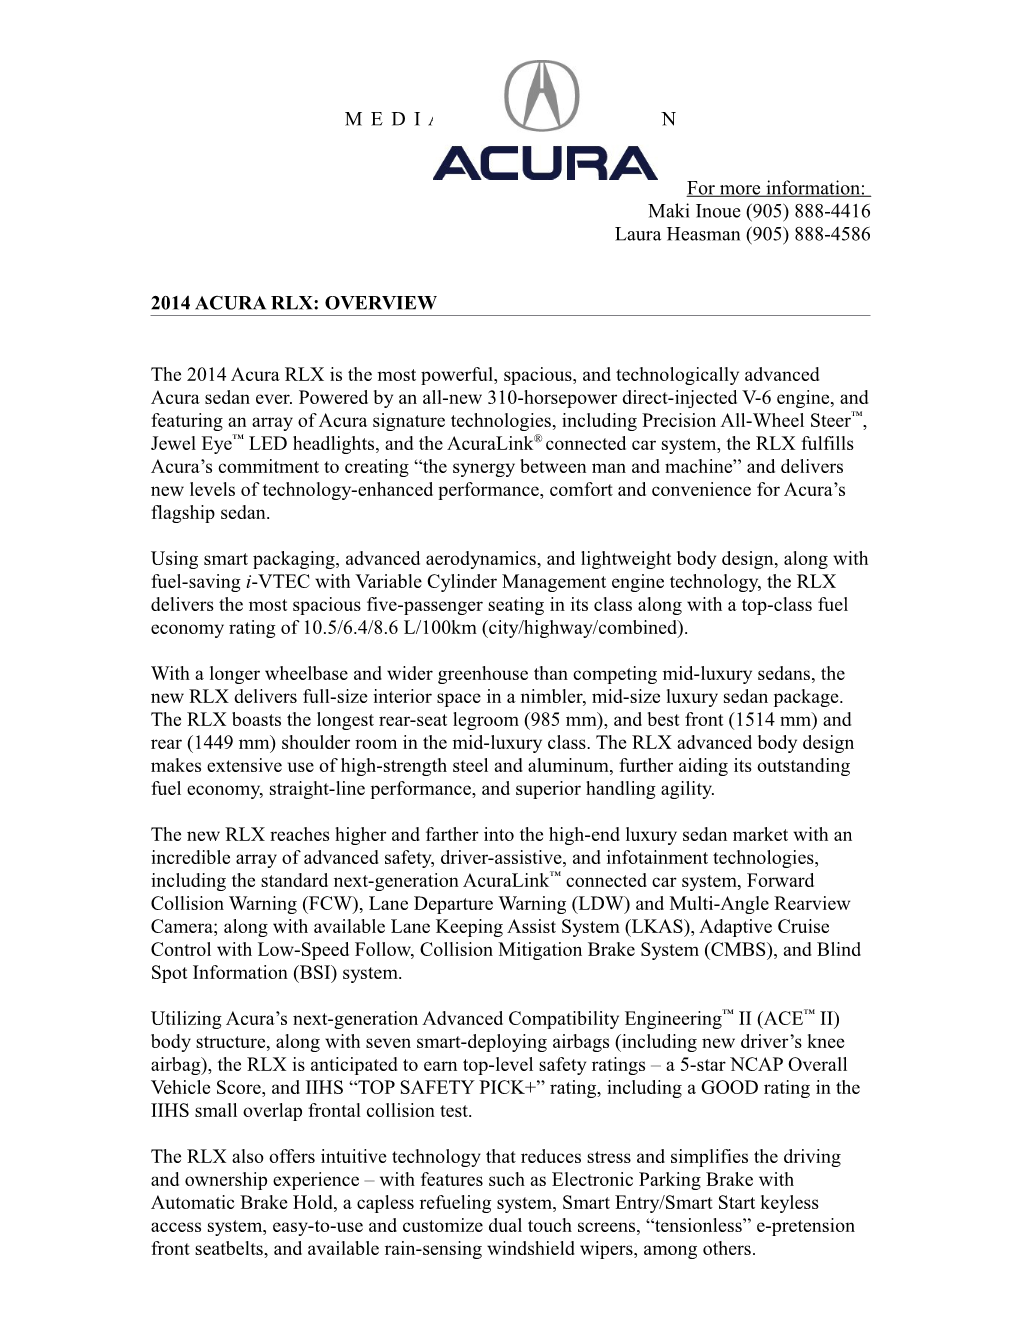 2014 Acura RLX Press Kitpage 1Of 72